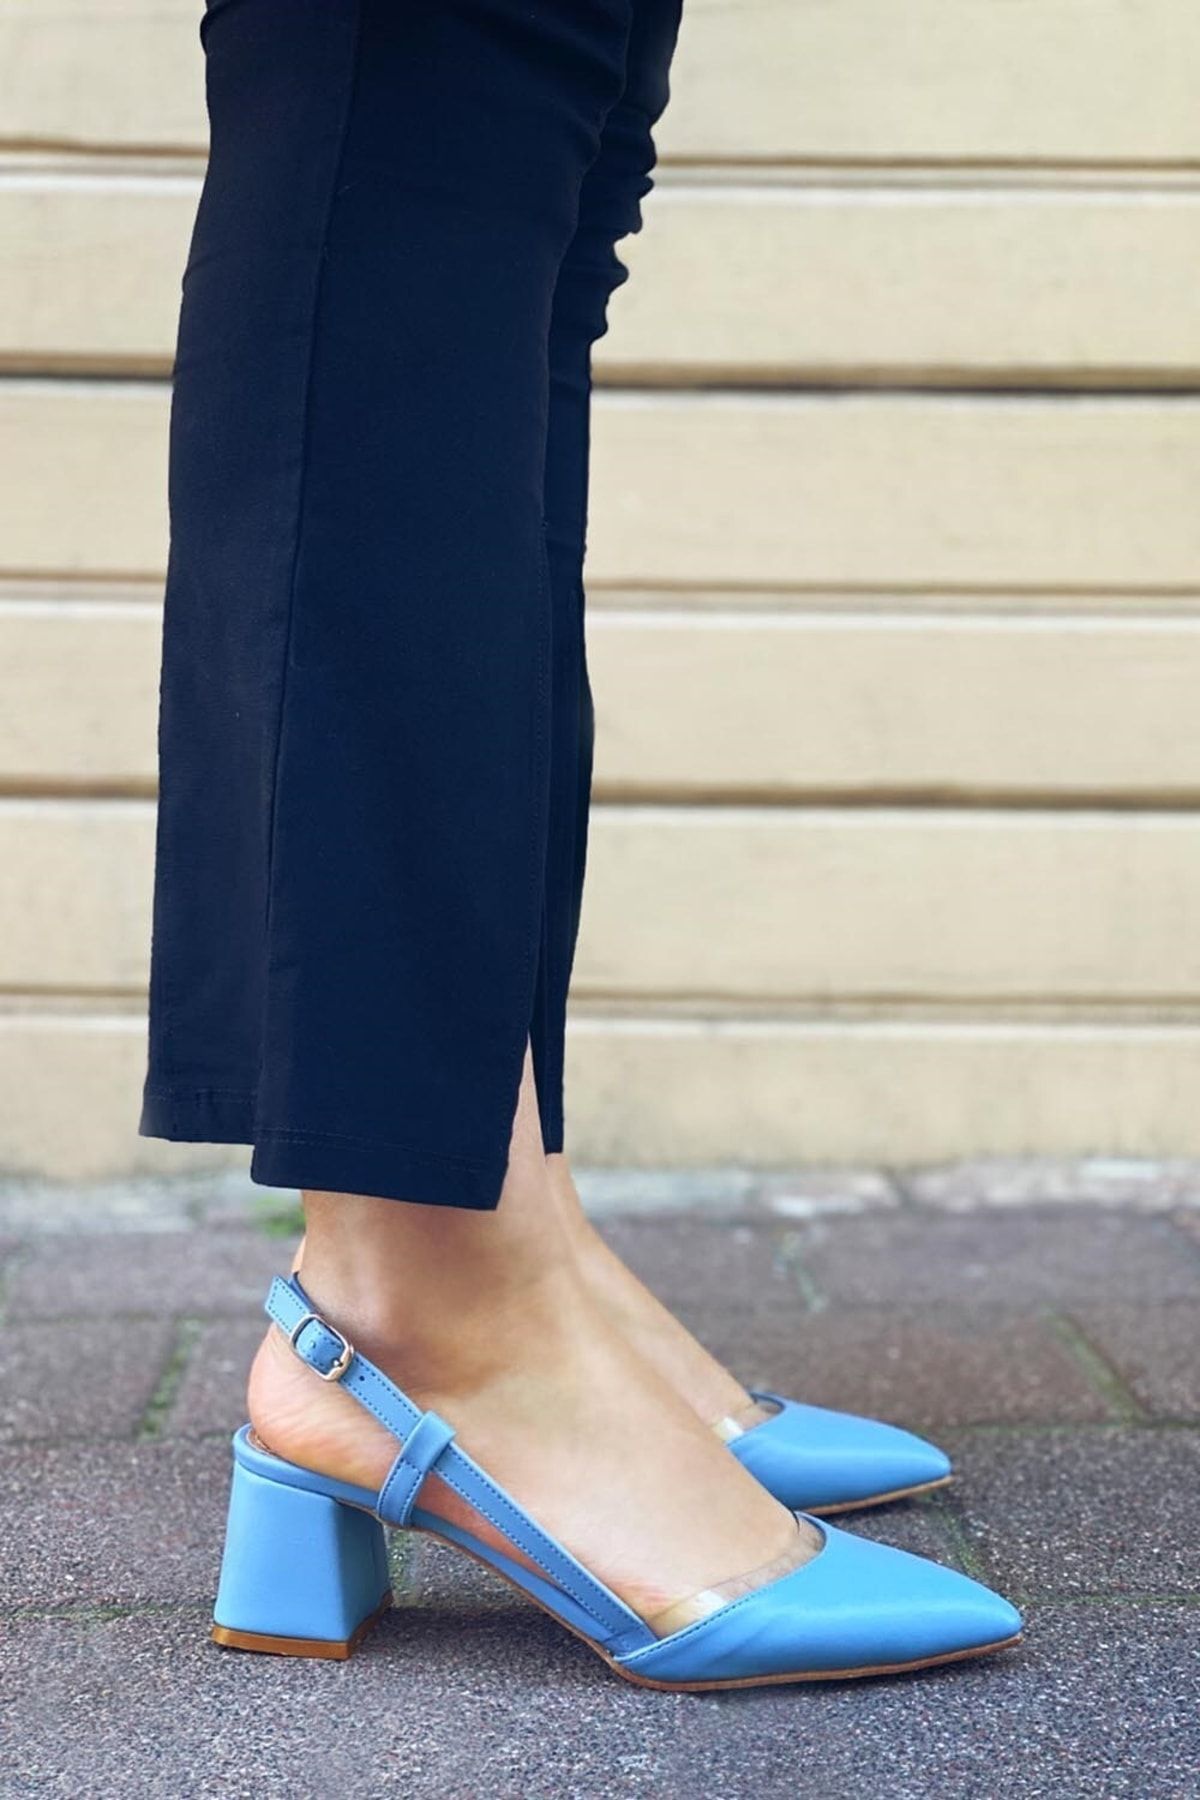 Straswans Roy Kadın Deri Topuklu Ayakkabı Bebe Mavi